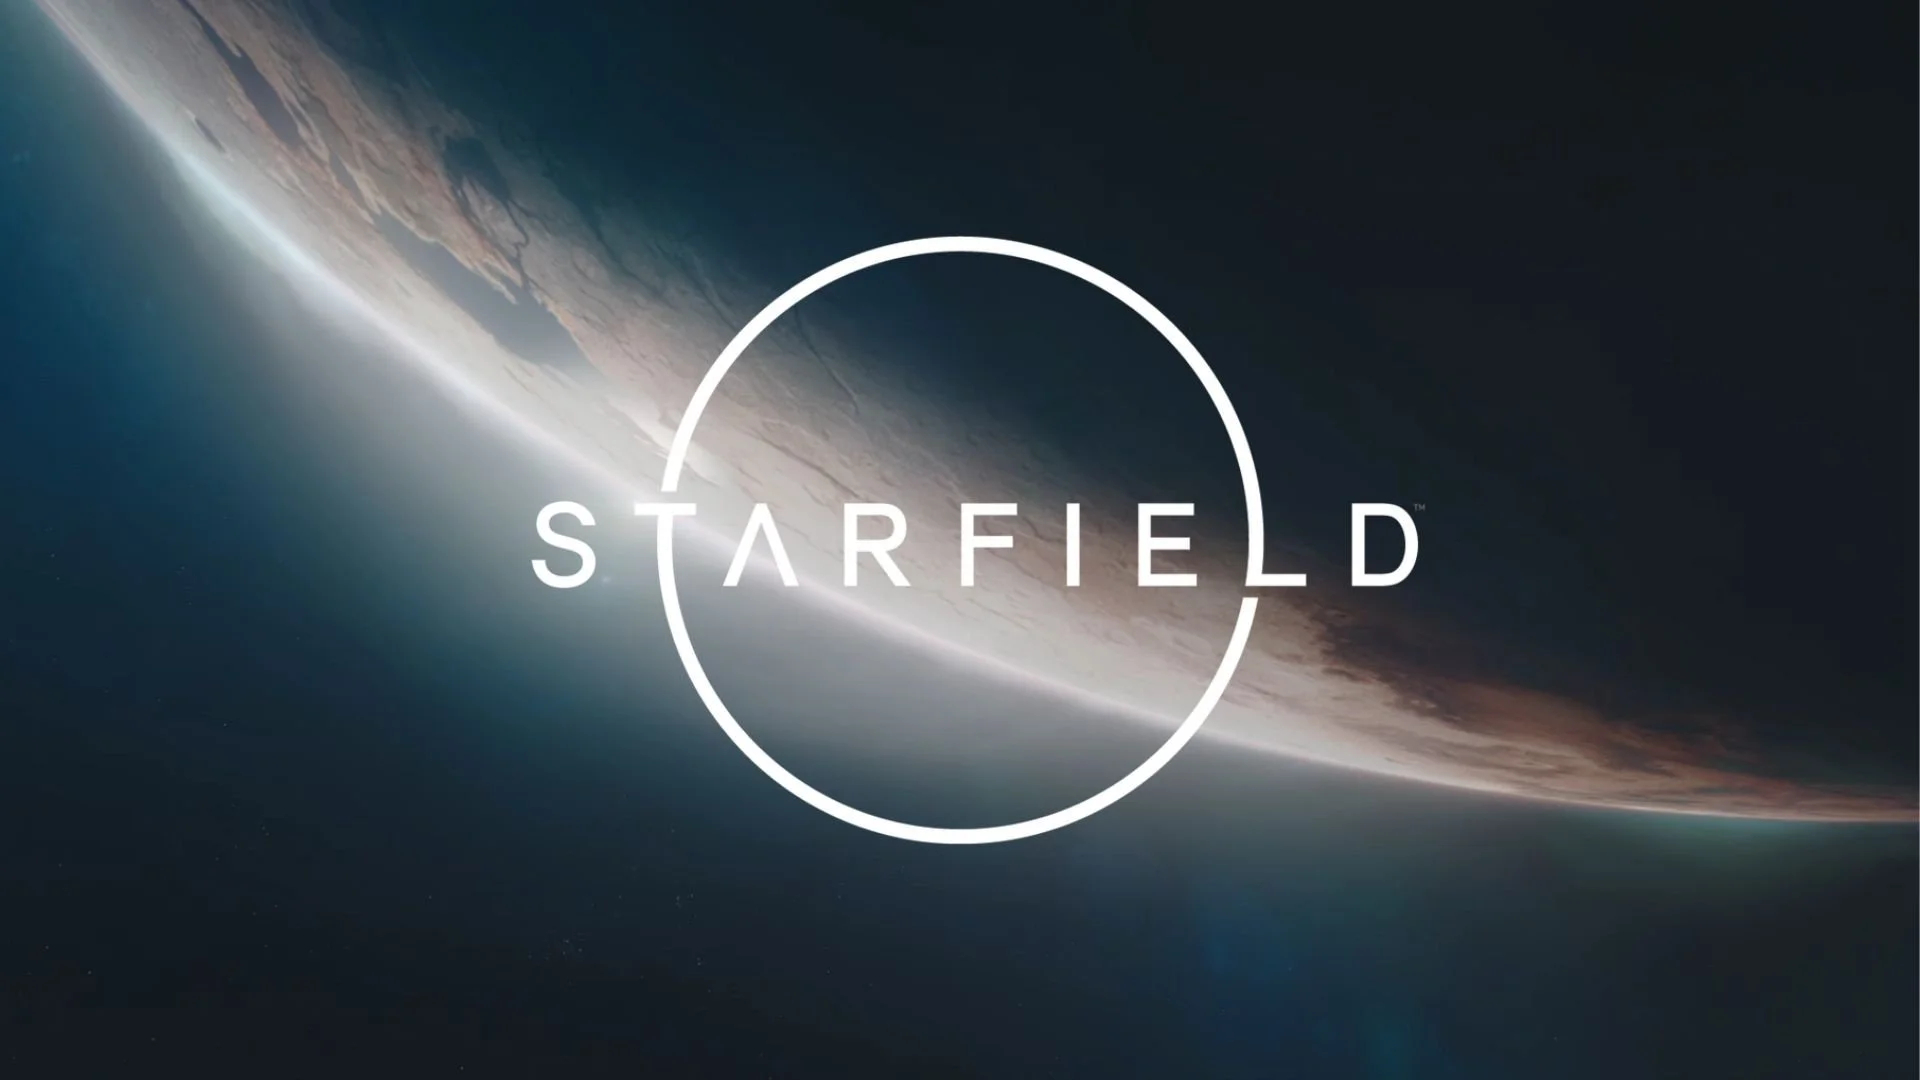 Обложка игры Starfield